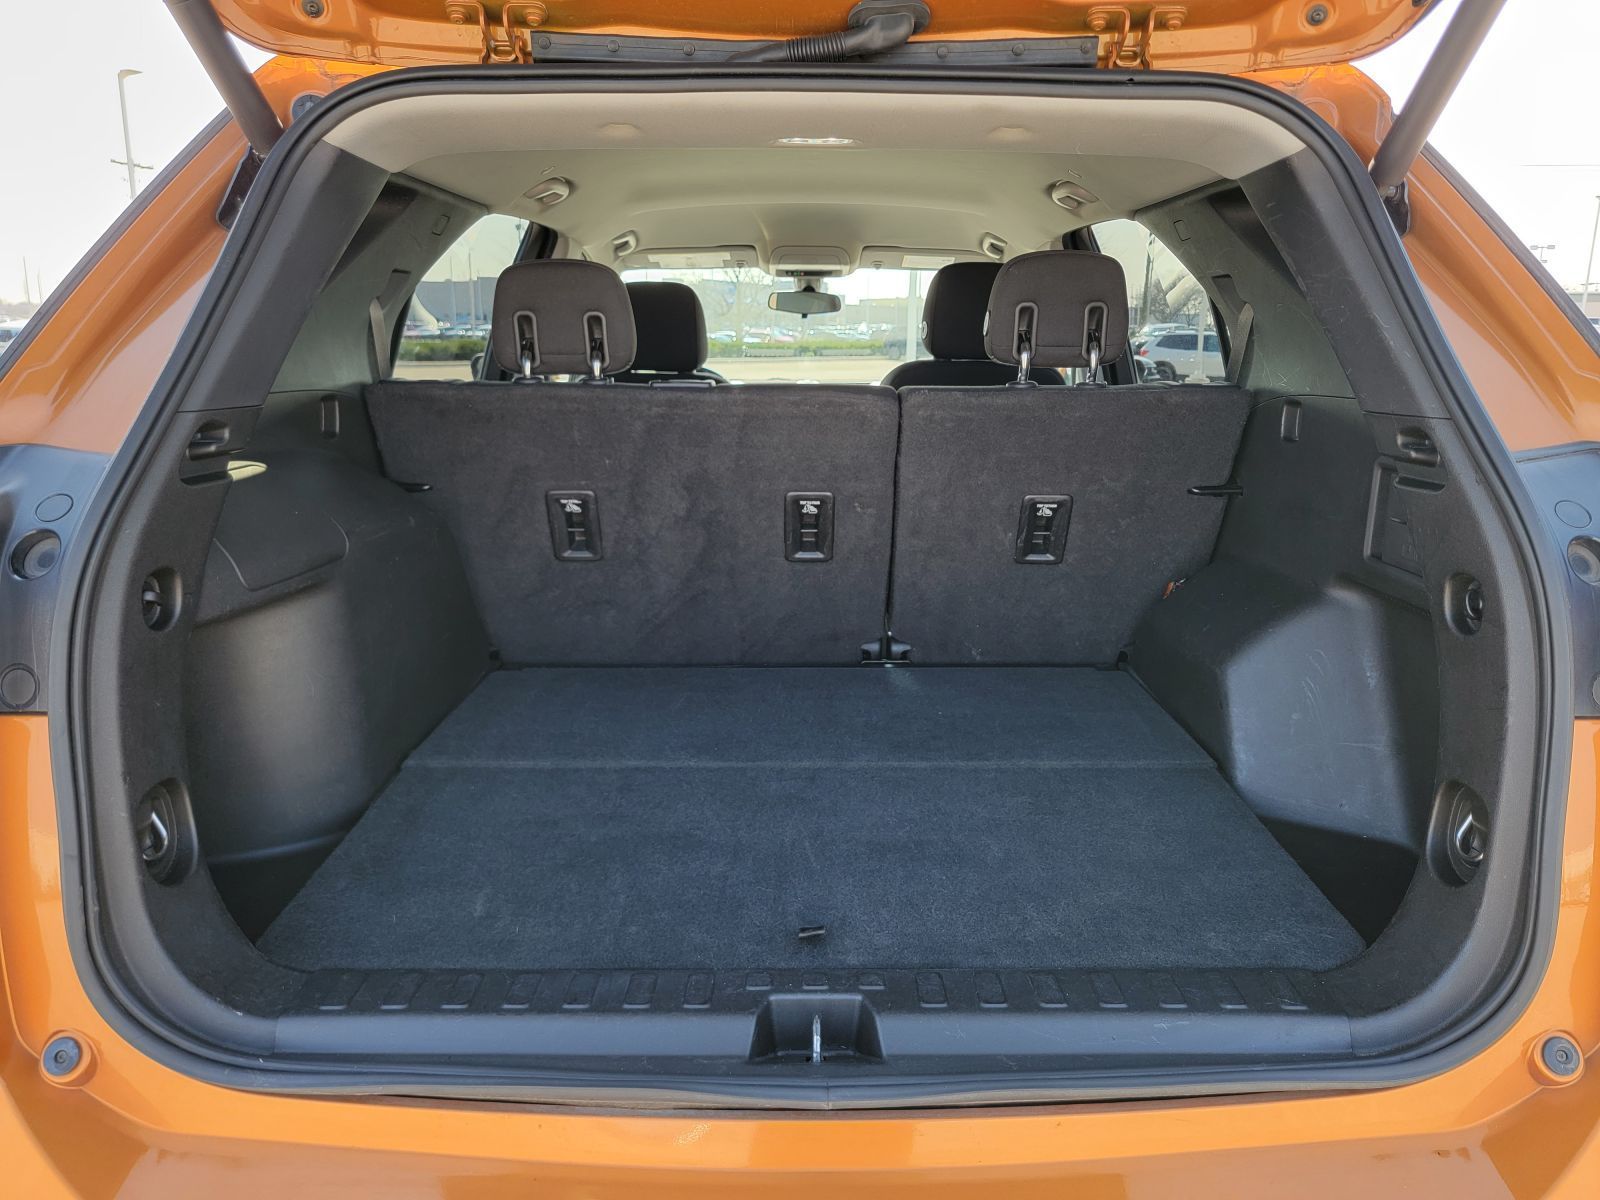 Used, 2019 Chevrolet Equinox LT, Orange, P0521-13